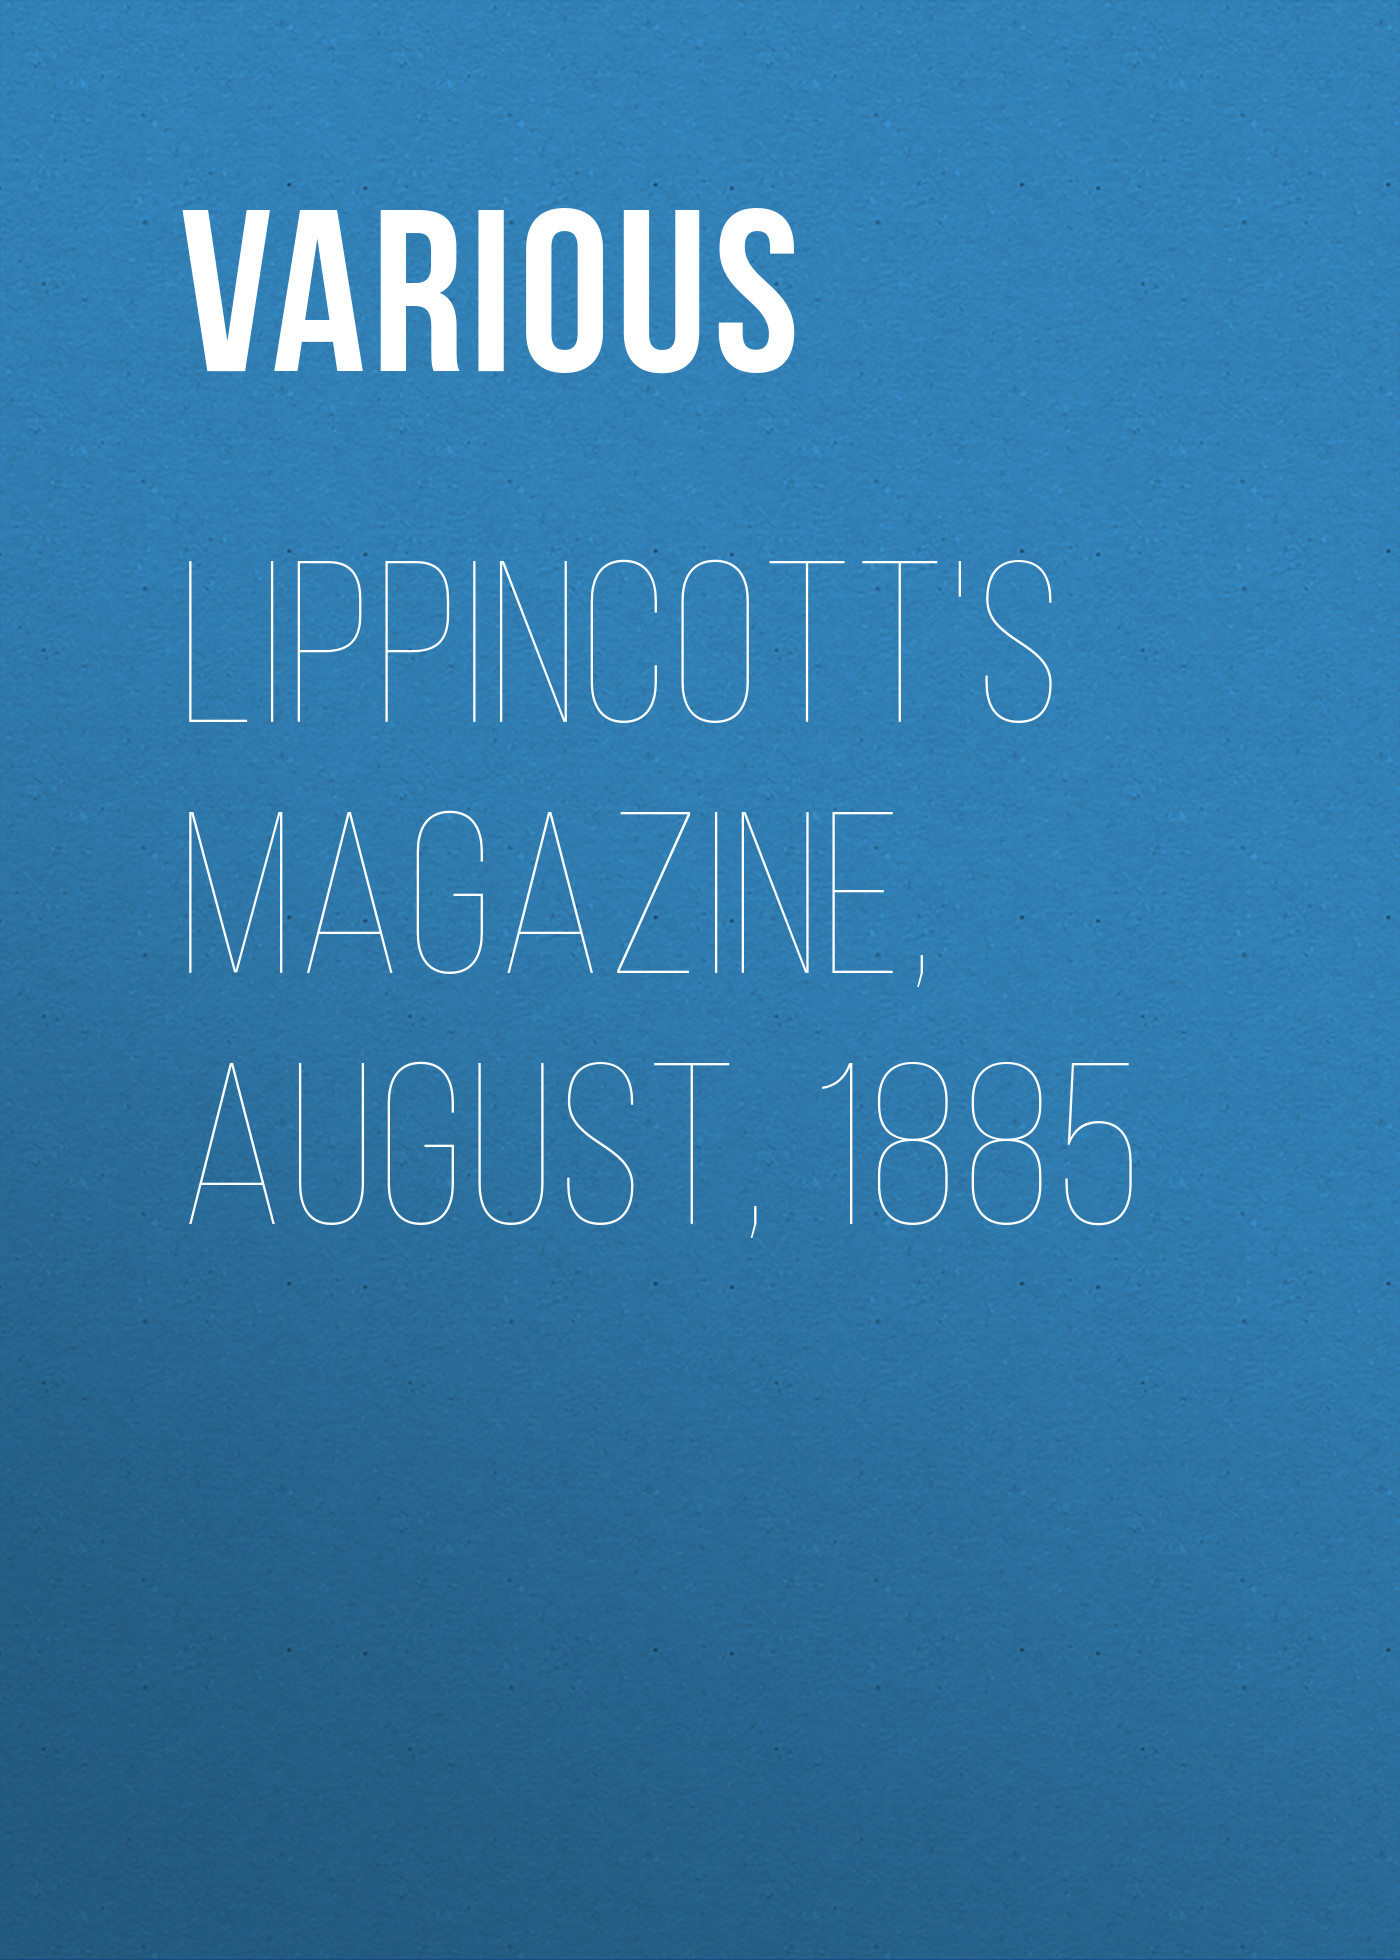 Книга Lippincott's Magazine, August, 1885 из серии , созданная  Various, может относится к жанру Зарубежная старинная литература, Журналы, Зарубежная образовательная литература. Стоимость электронной книги Lippincott's Magazine, August, 1885 с идентификатором 35496527 составляет 0 руб.